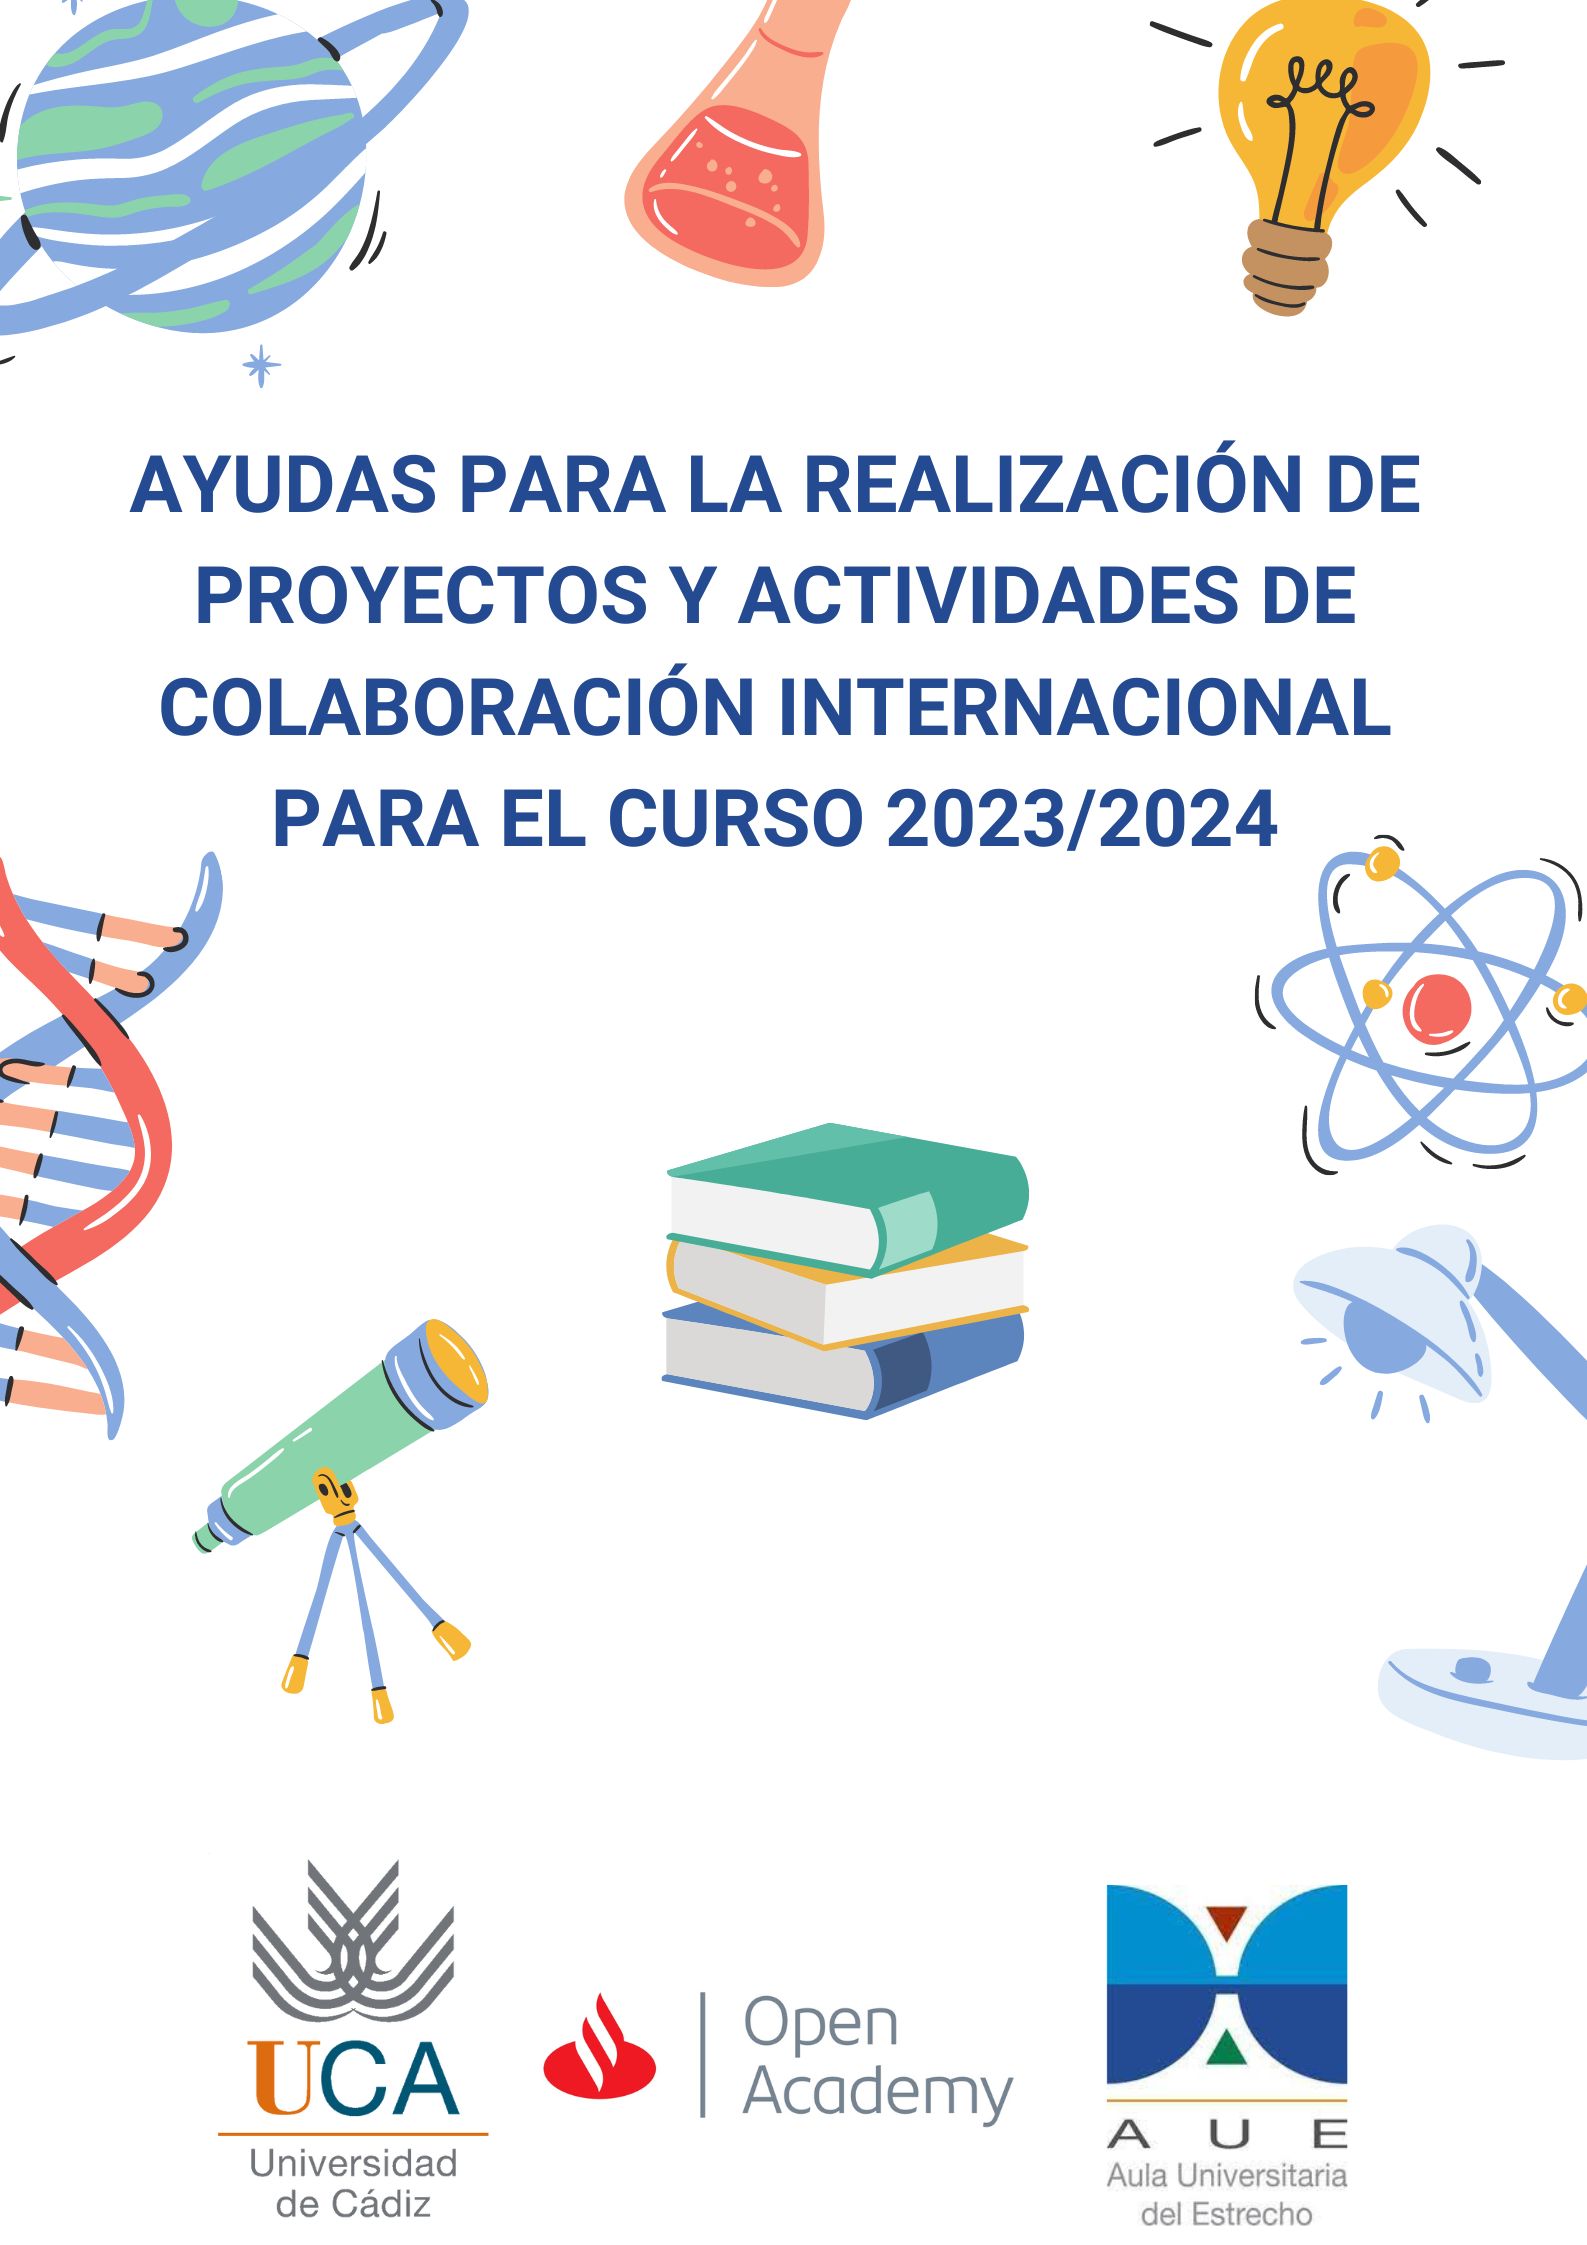 AYUDAS PARA LA REALIZACIÓN DE PROYECTOS Y ACTIVIDADES DE COLABORACIÓN INTERNACIONAL PARA EL CURSO 2023/2024